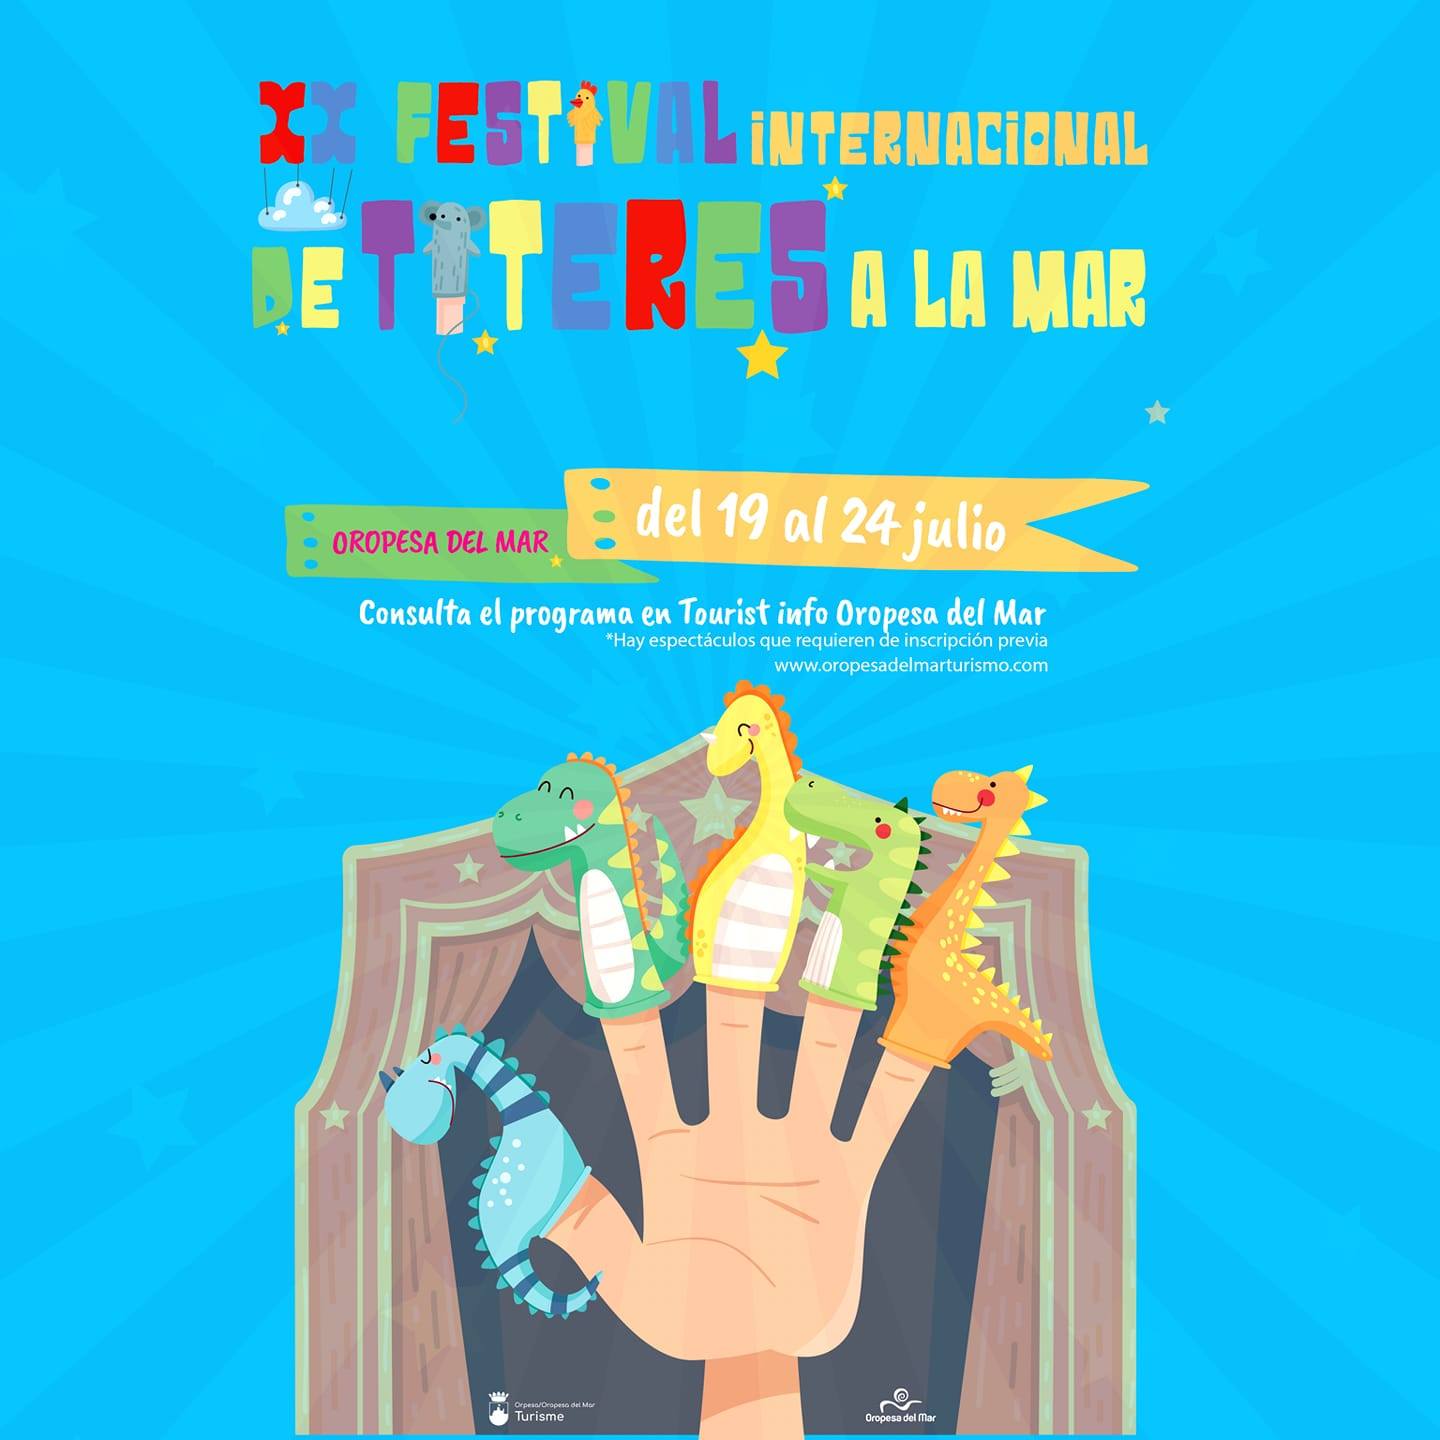 EL FESTIVAL INTERNACIONAL DE TÍTERES A LA MAR CELEBRA SUS 20 AÑOS EN OROPESA DEL MAR